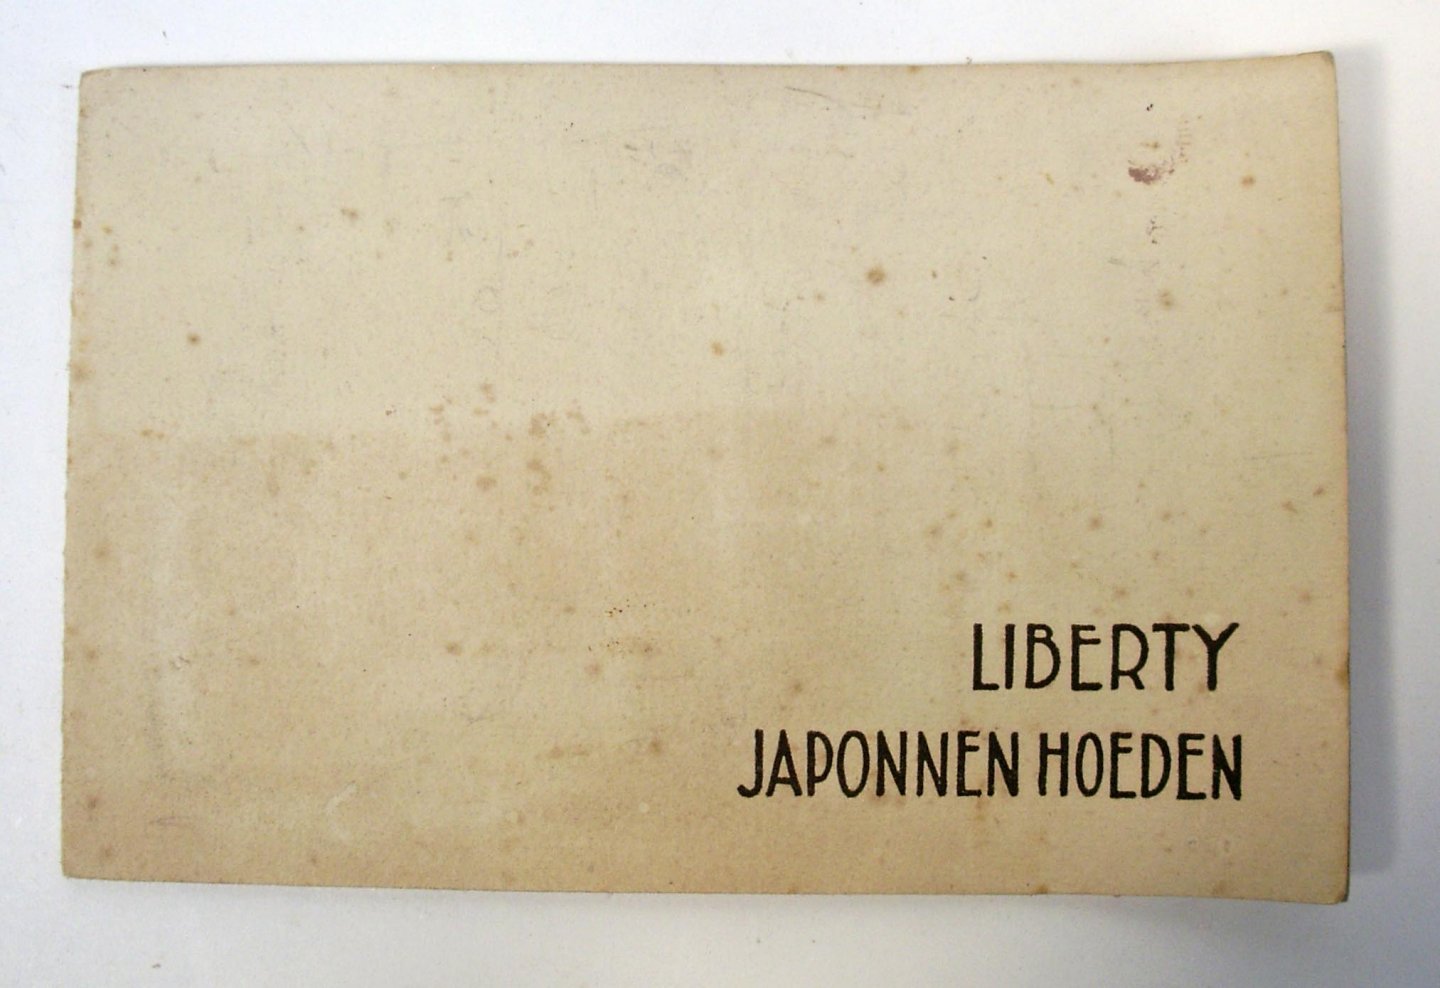 Metz & Co. - Liberty japonnen hoeden. Voorjaar 1921. Hoeden blouses japonnen mantelpakken mantels modellen elders niet verkrijgbaar / Liberty Amsterdam 'Gravenhage Metz & Co.